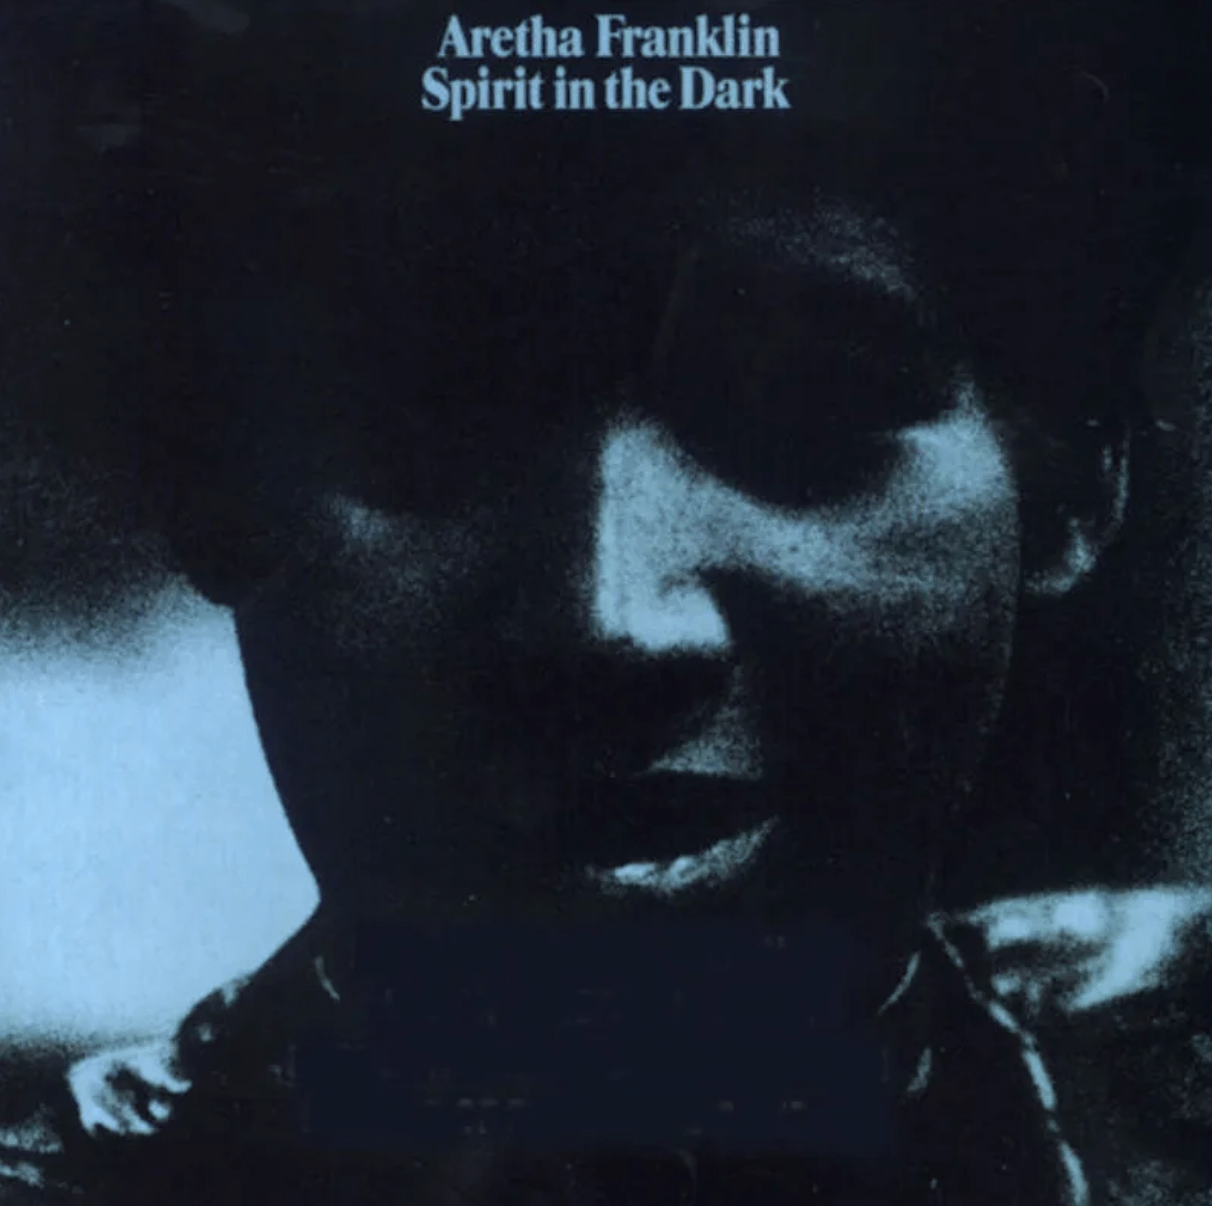 Spirit in the Dark album by Aretha Franklin